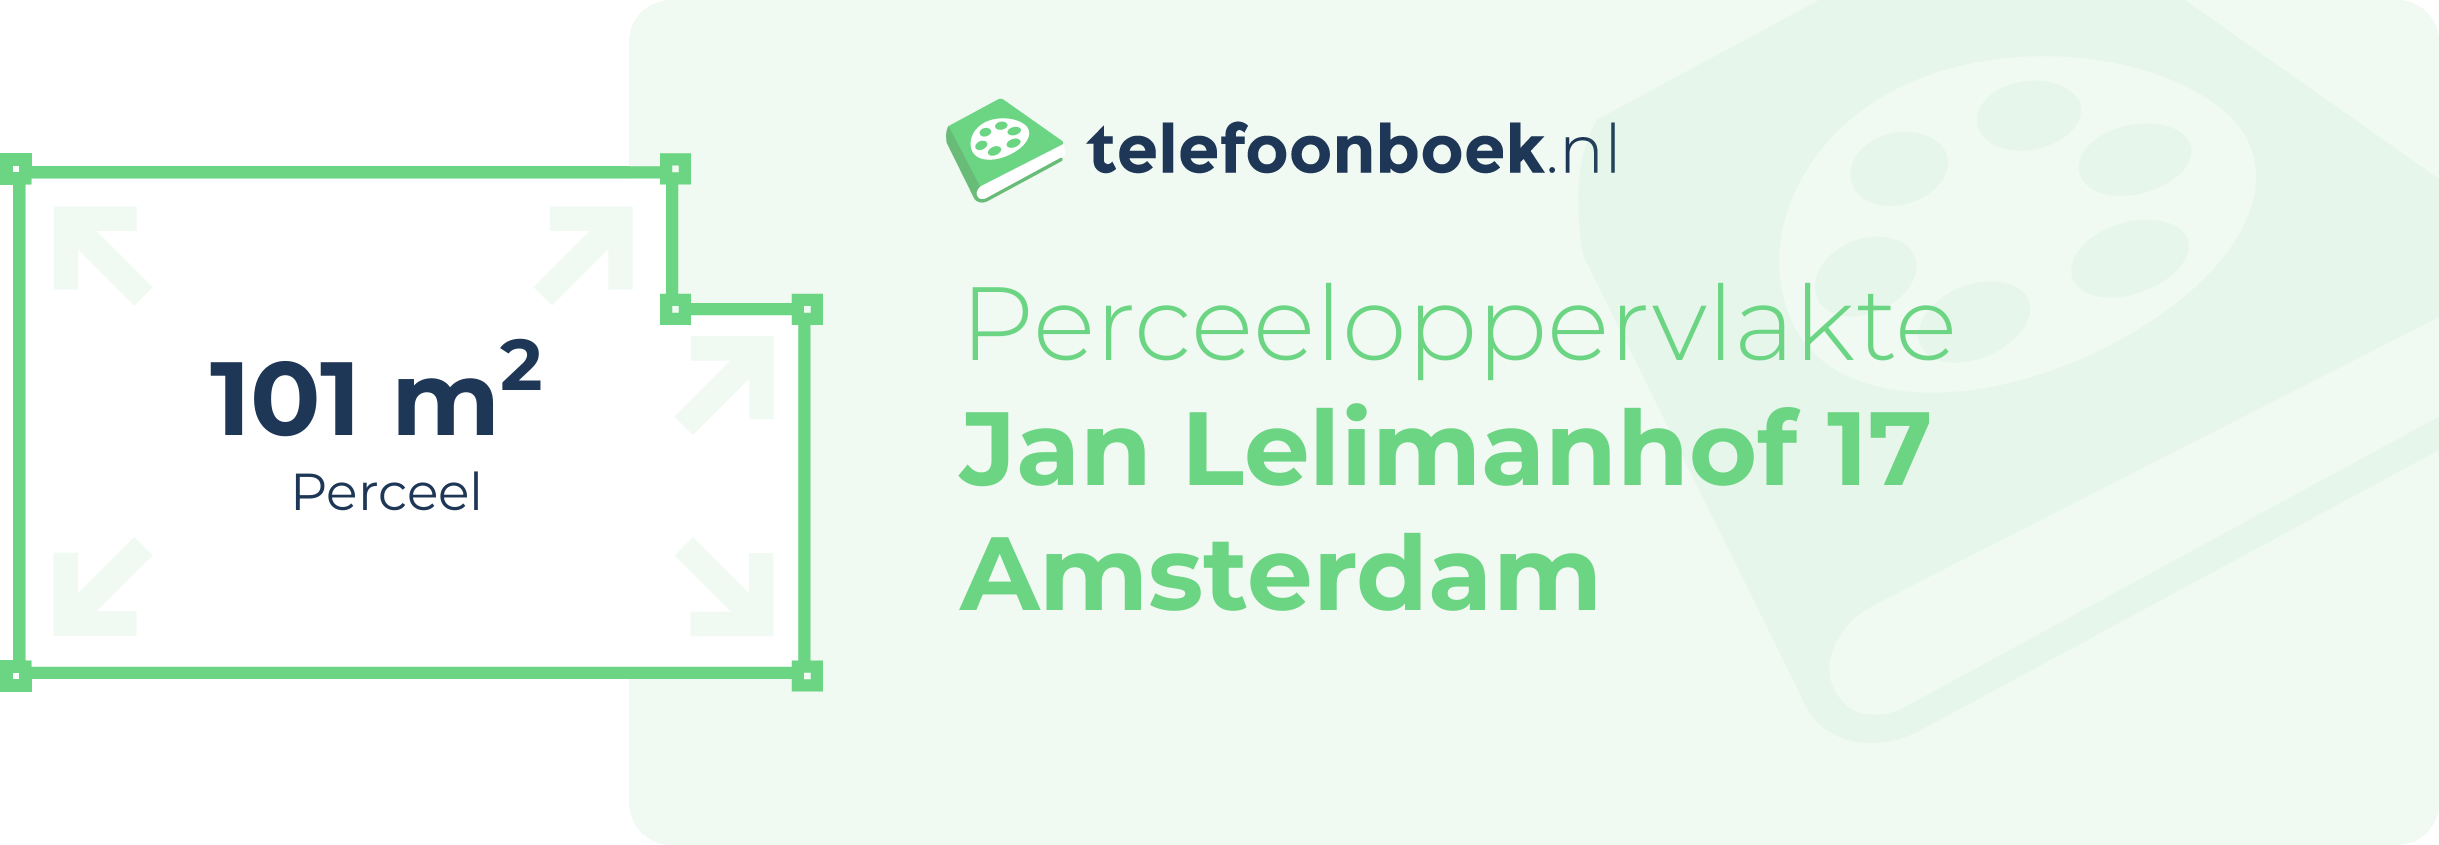 Perceeloppervlakte Jan Lelimanhof 17 Amsterdam